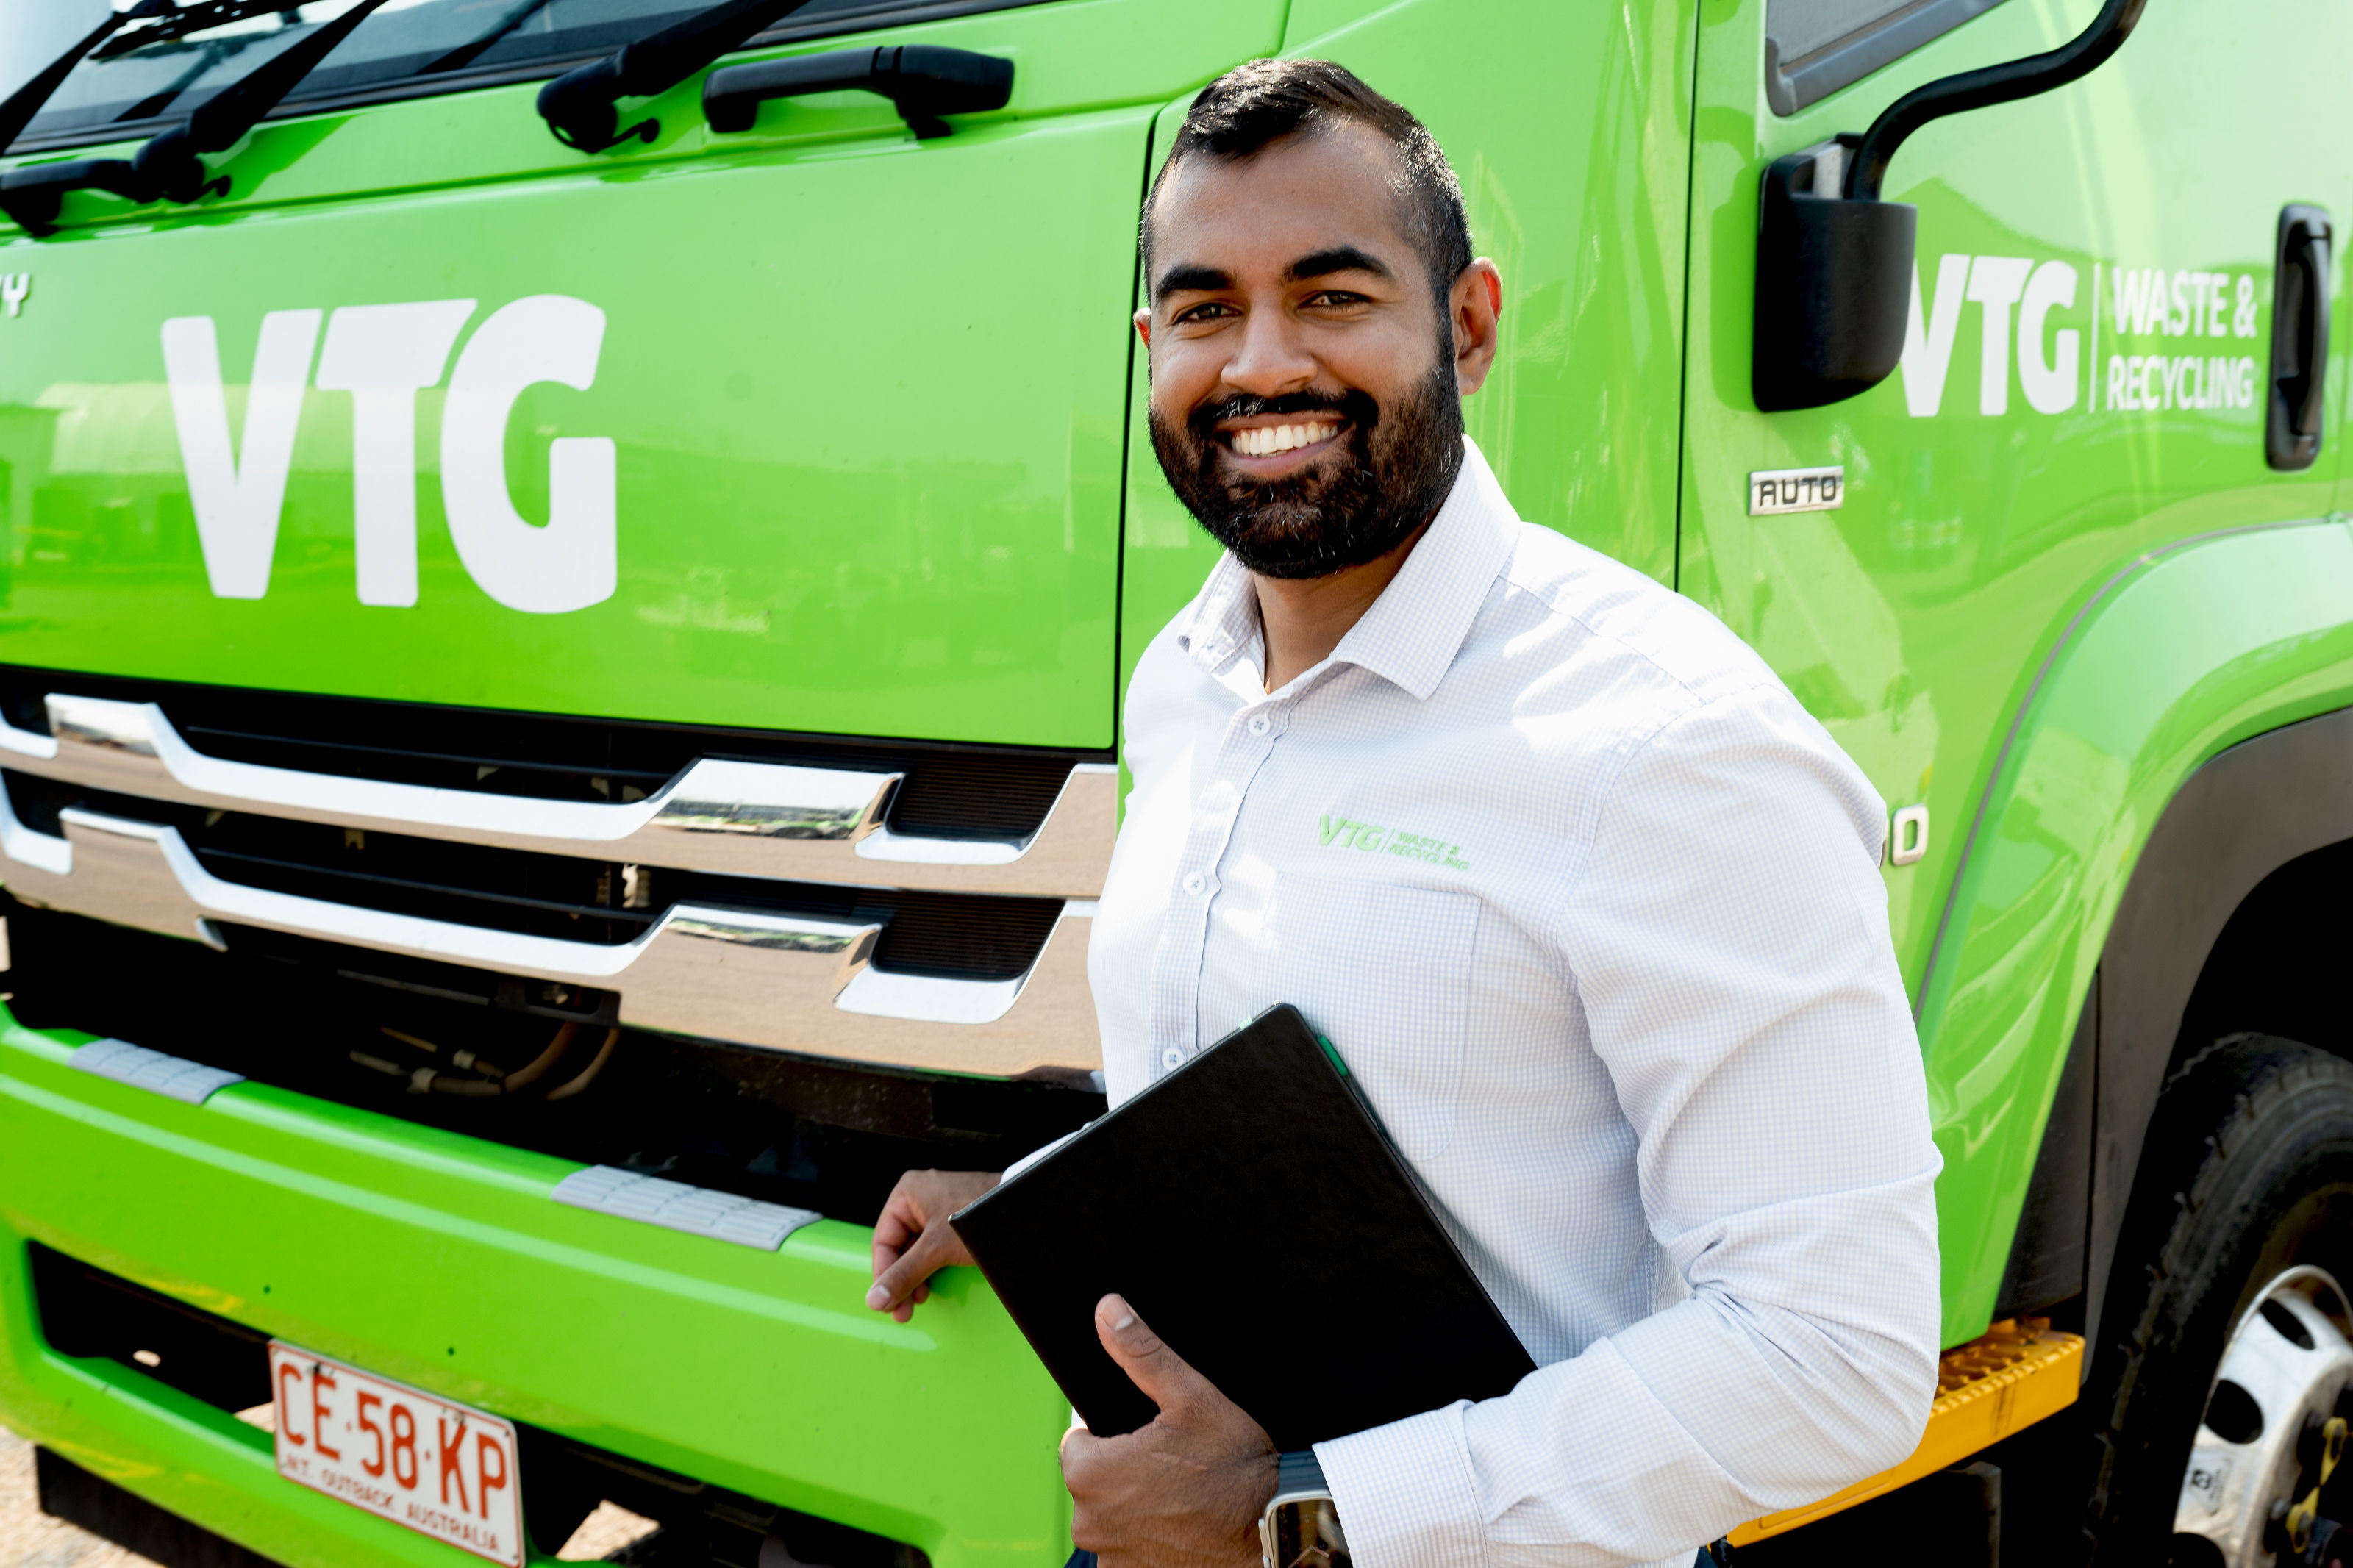 Managing Director of VTG Waste & Recycling James Prakash